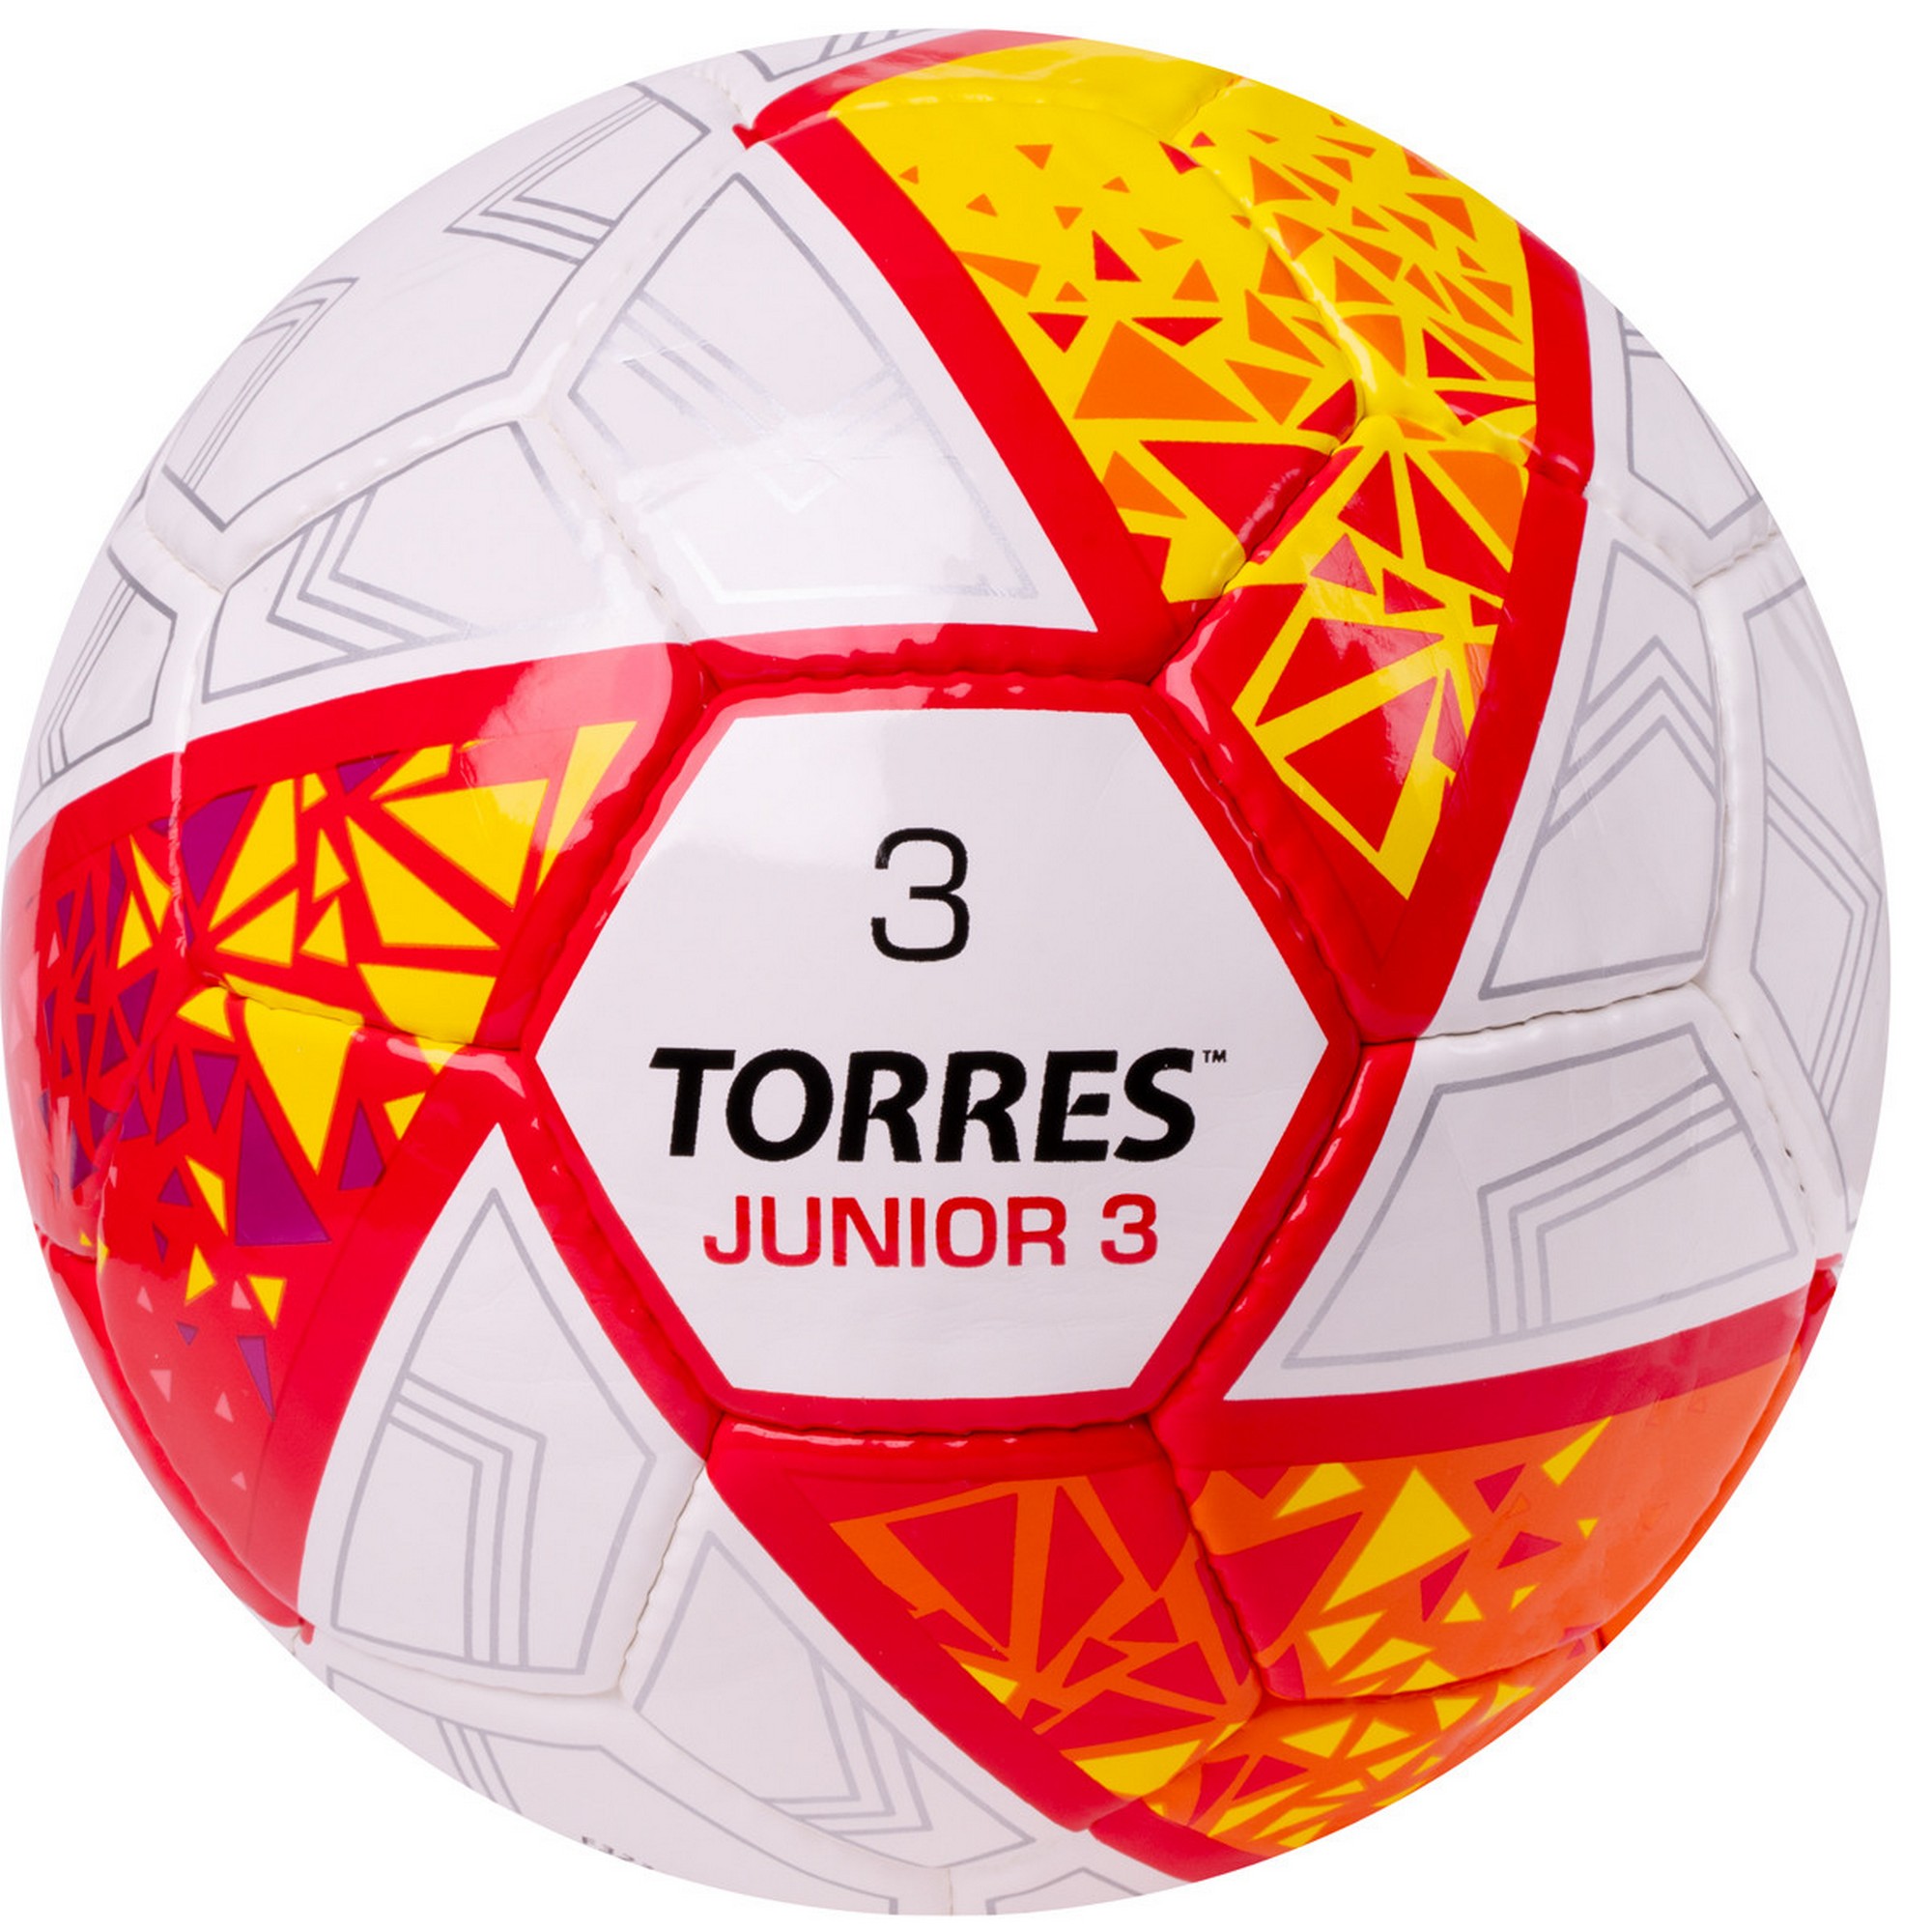   Torres Junior-3 F323803 .3